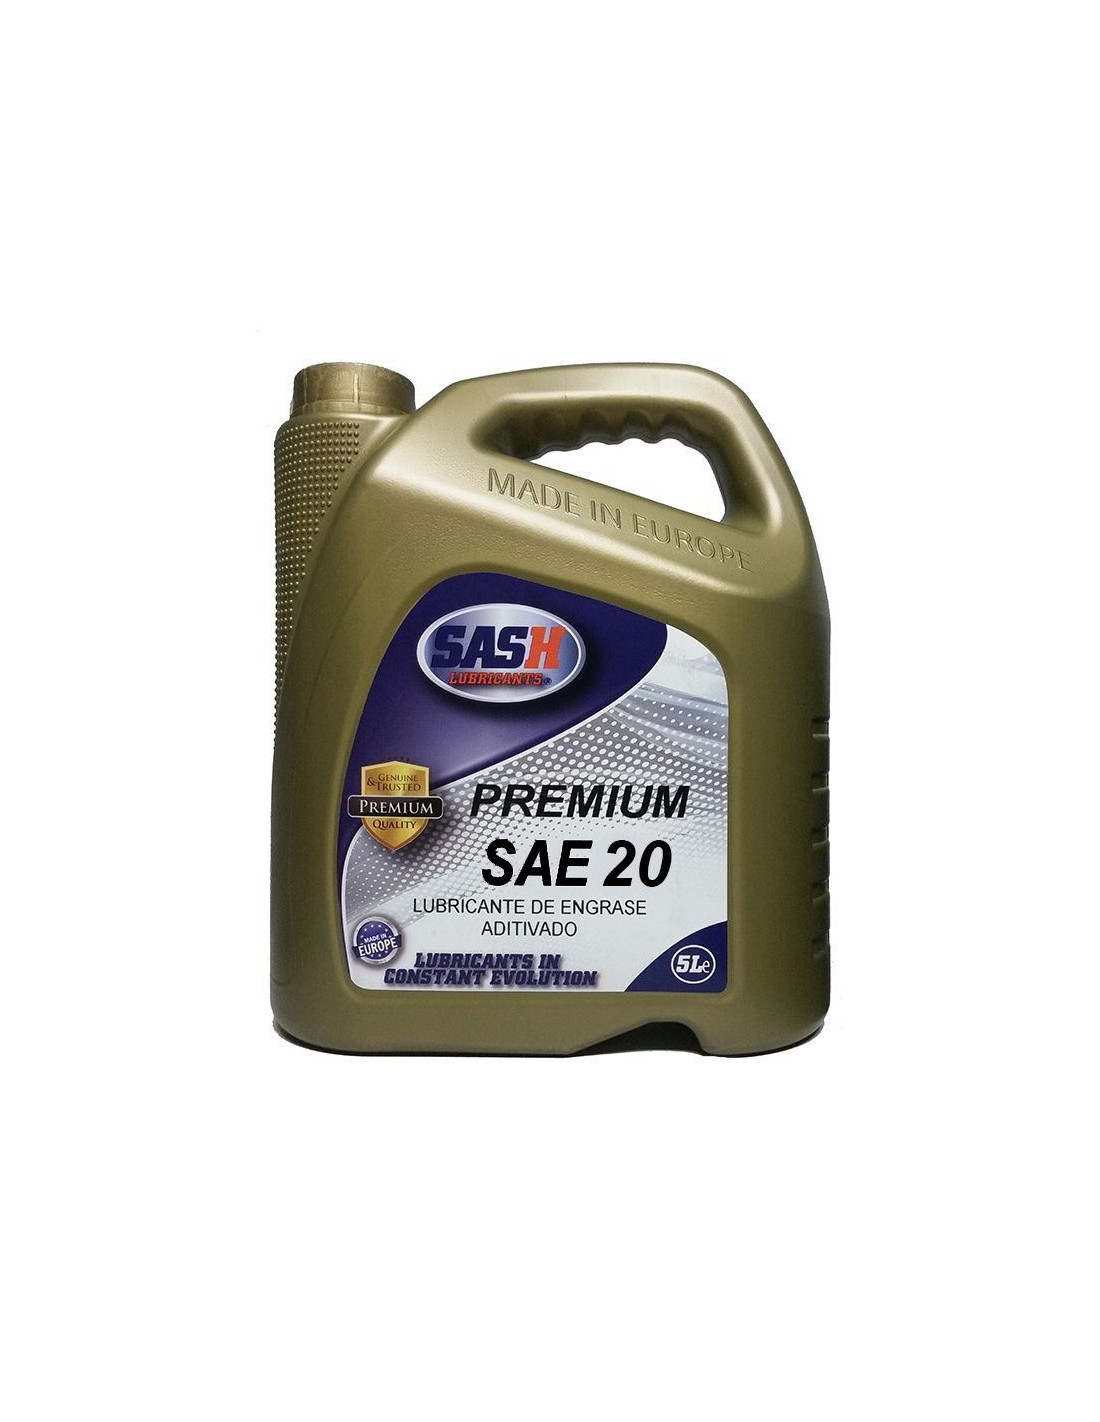 Comprar Sash Premium Gasolina SAE 20 | Compralubricantes.com